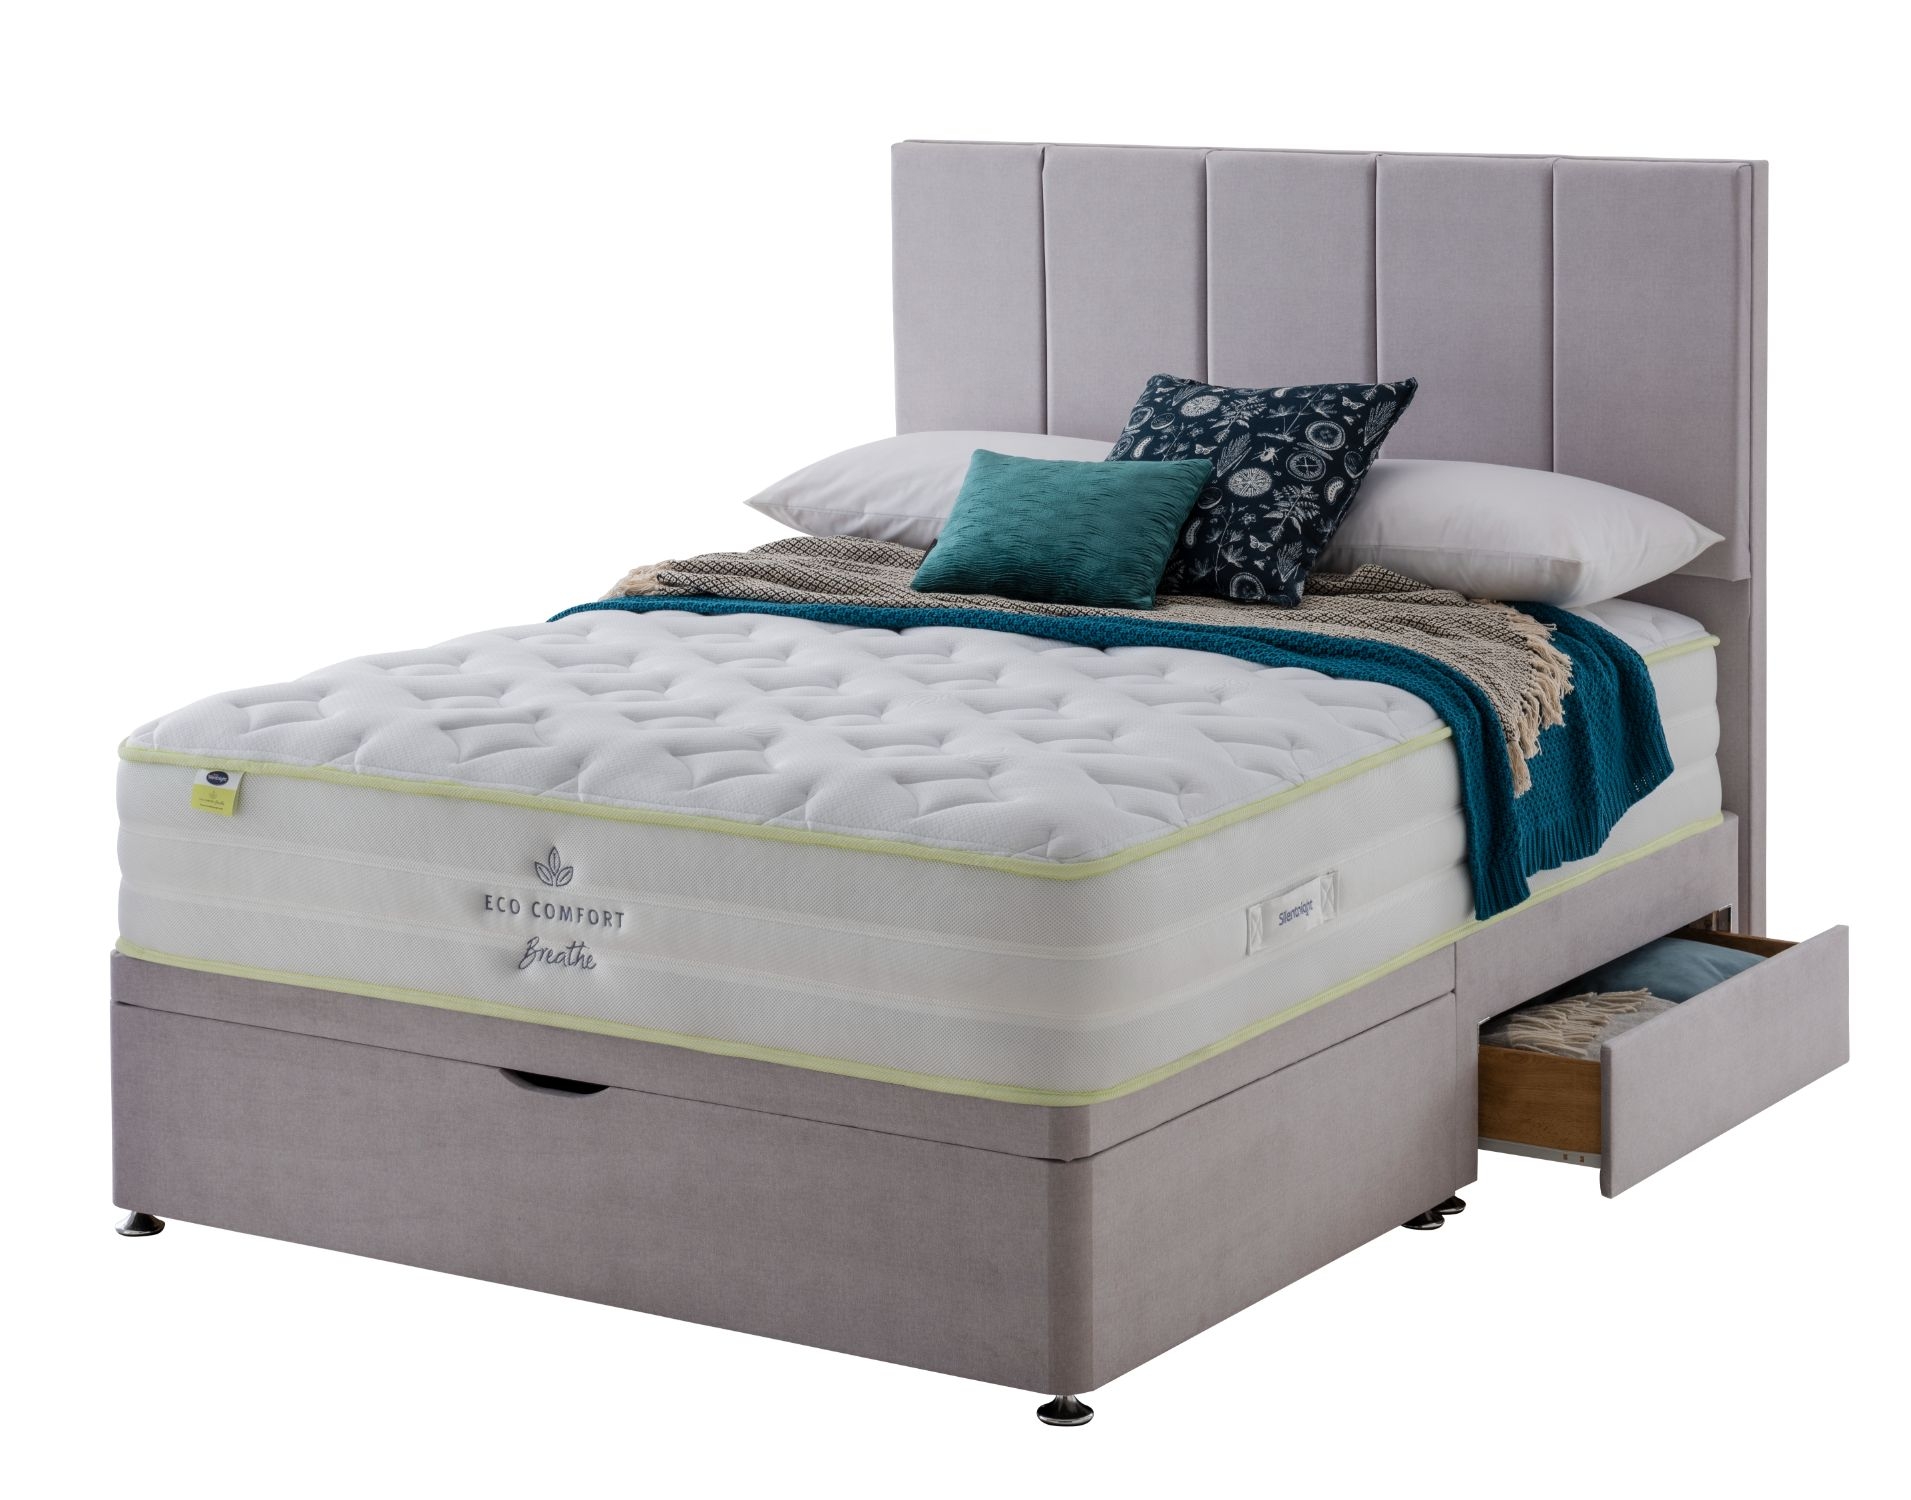 silentnight eco comfort mattress topper